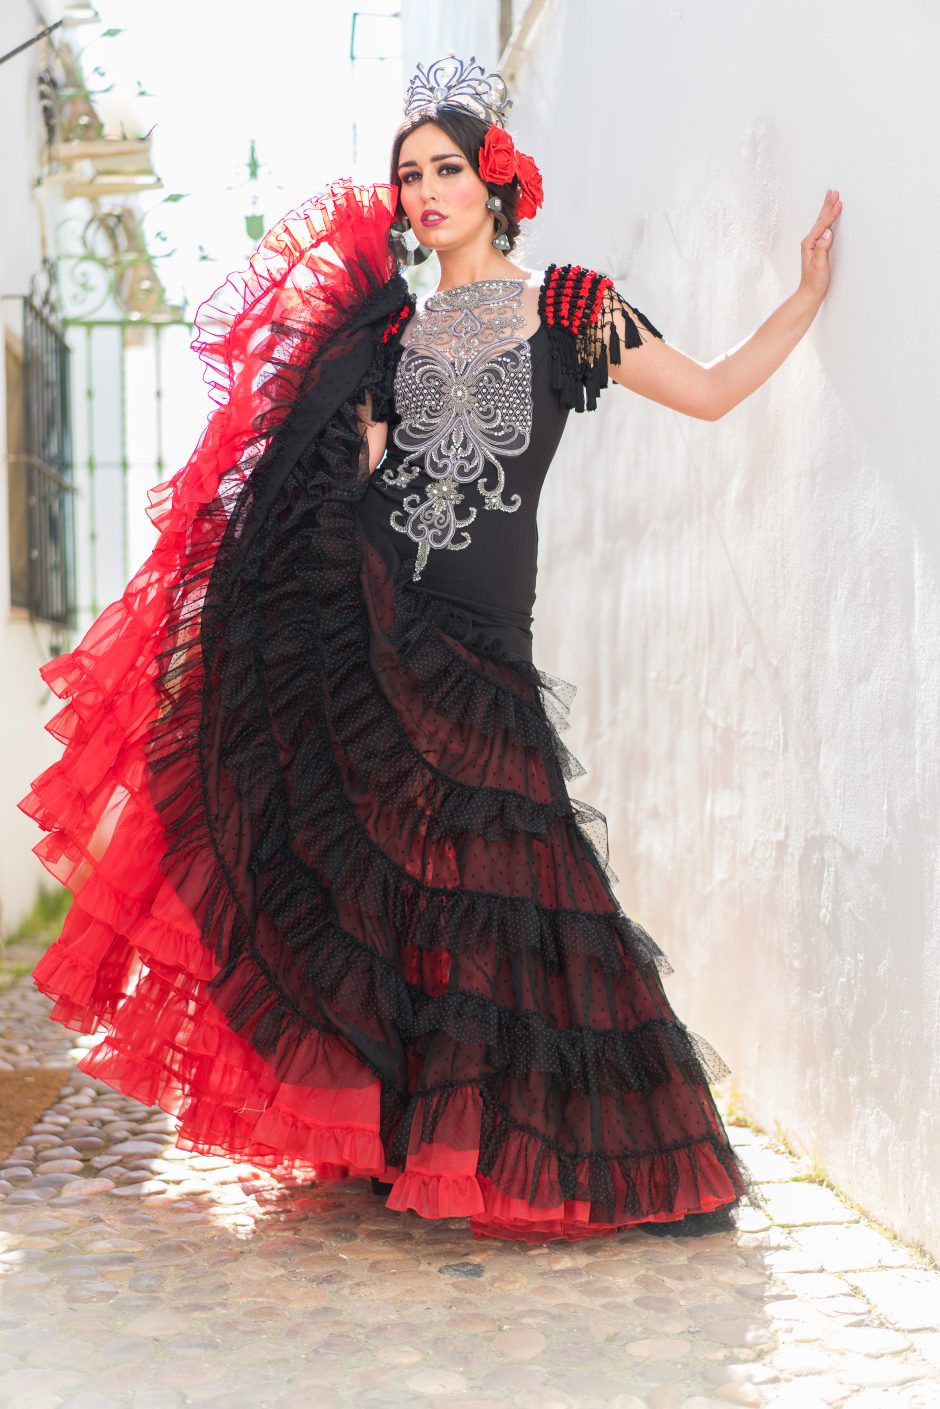 Flamenko sukneles kurianti lietuvė stebina ispanus andalūzišku skoniu